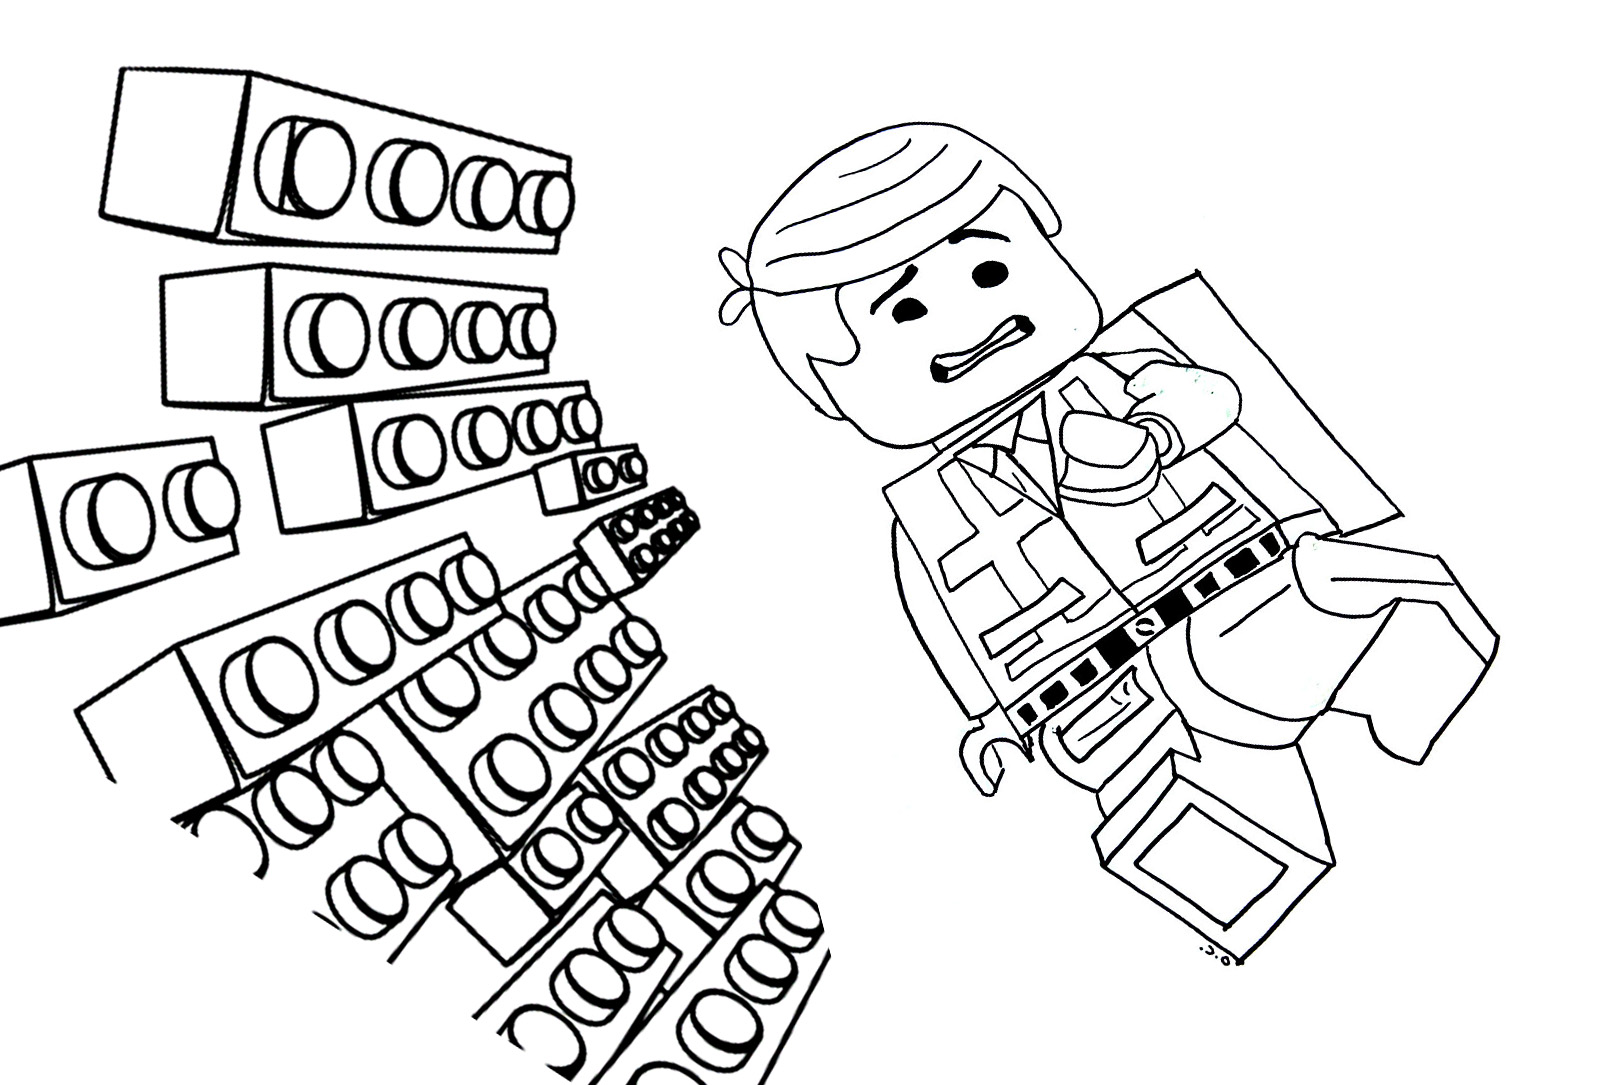 Dessin d'Emmet le héros de LEGO MOVIE avec des briques arrivant sur lui